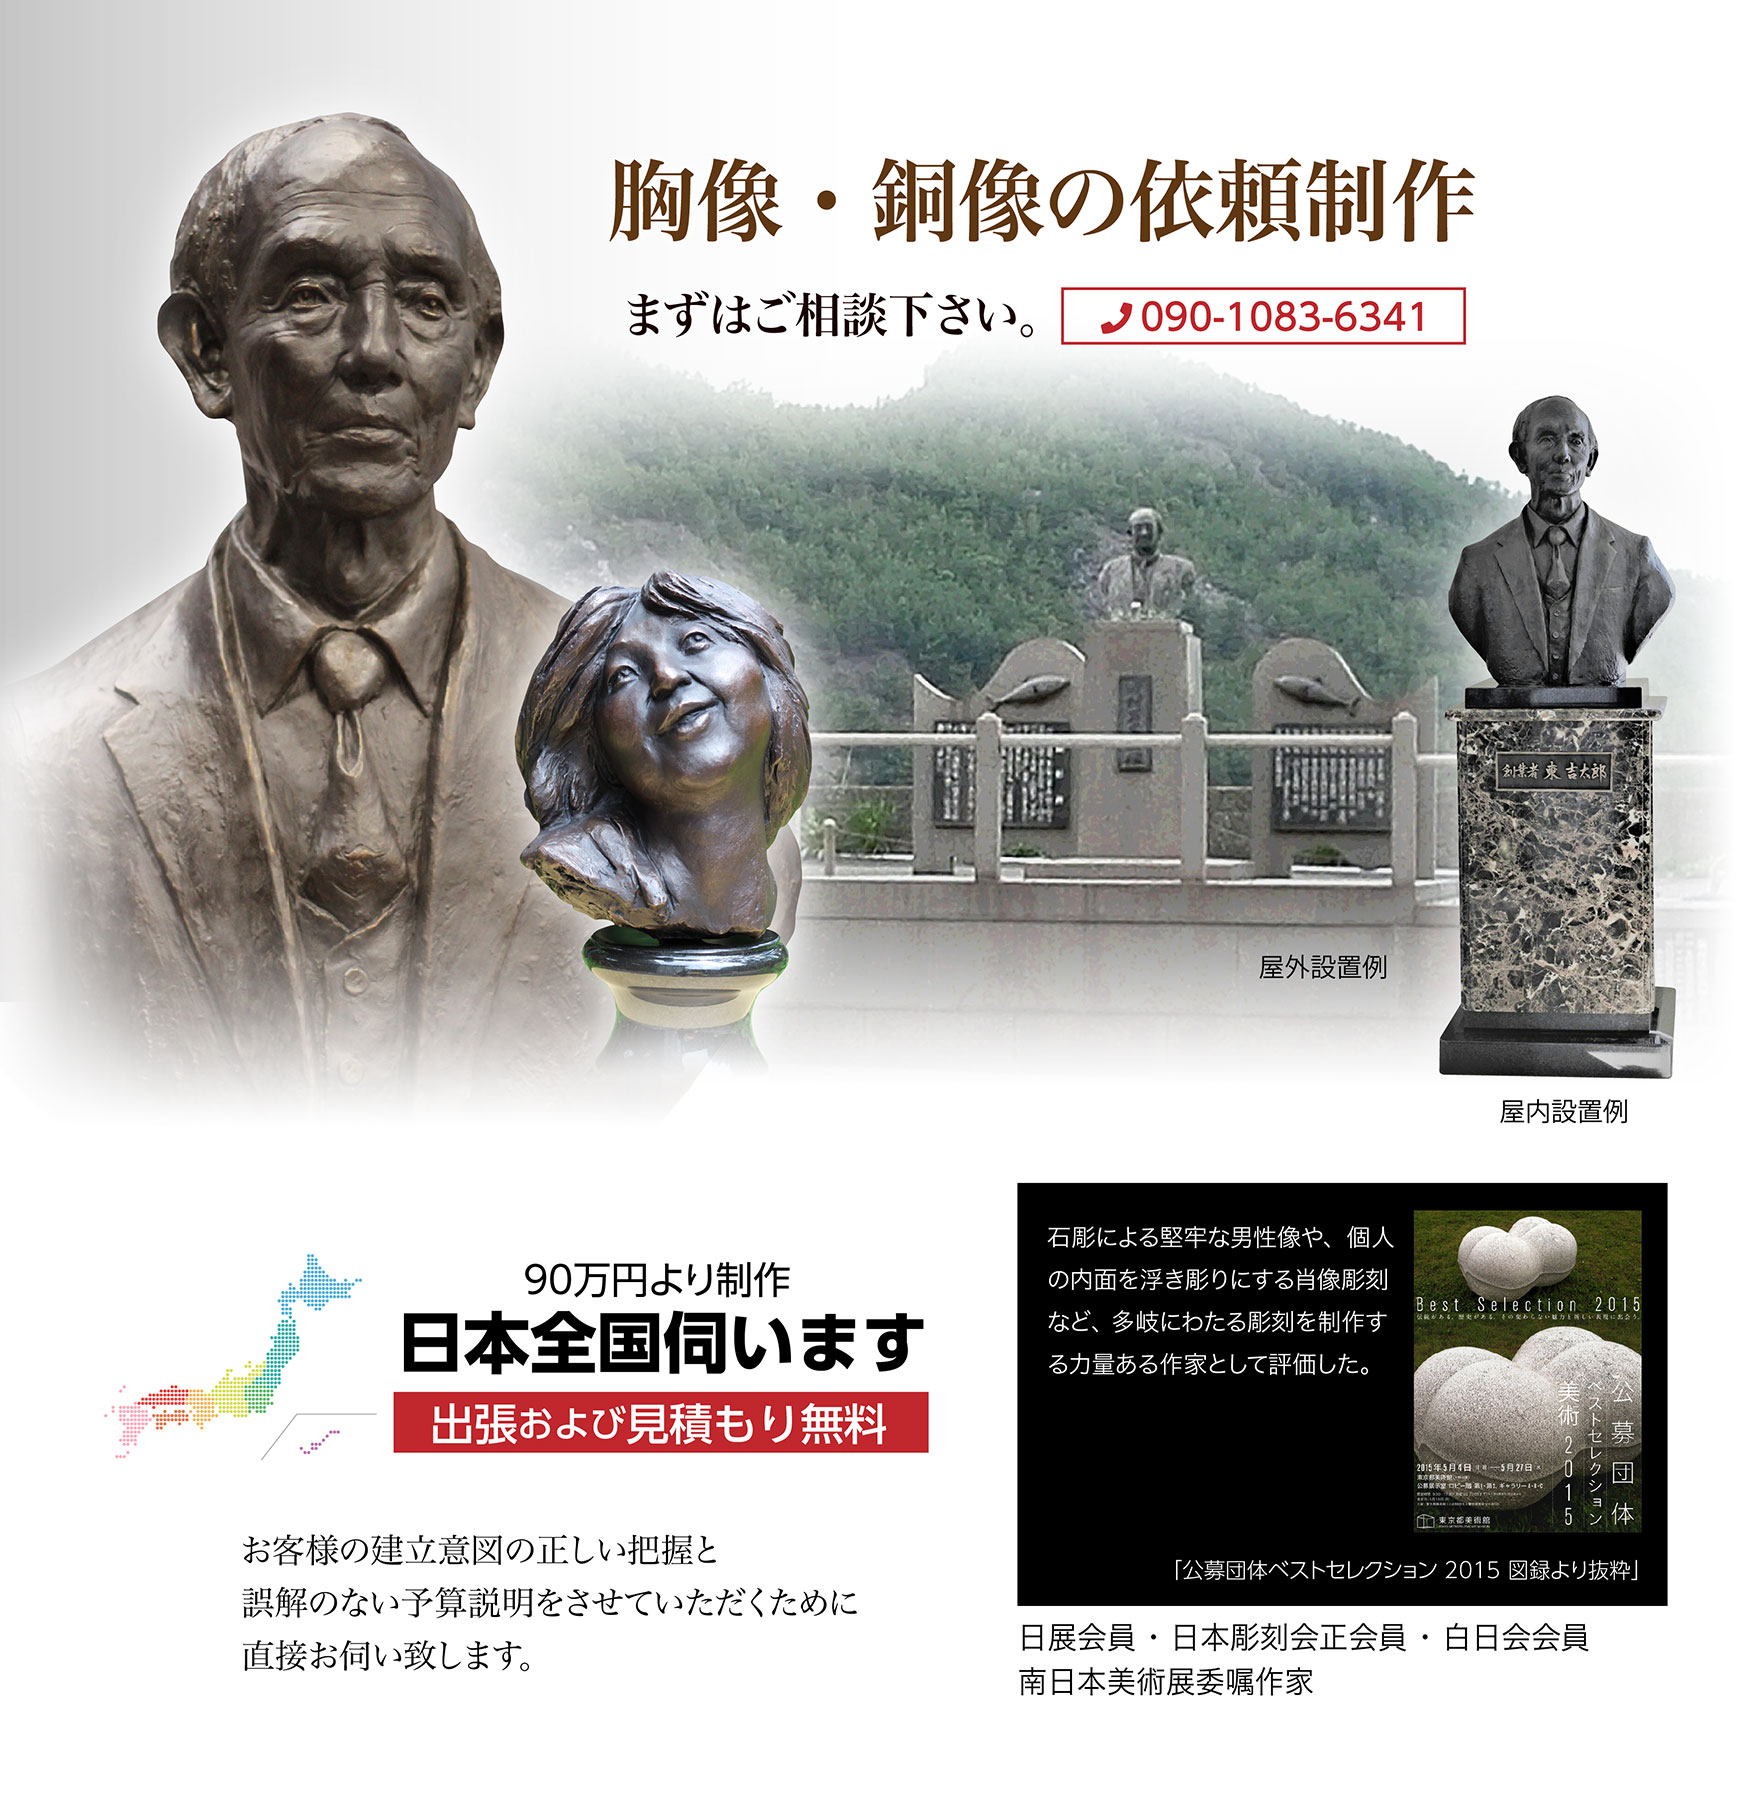 胸像・銅像の依頼制作。まずはご相談下さい。 | 出張および見積もり無料。日本全国伺います。